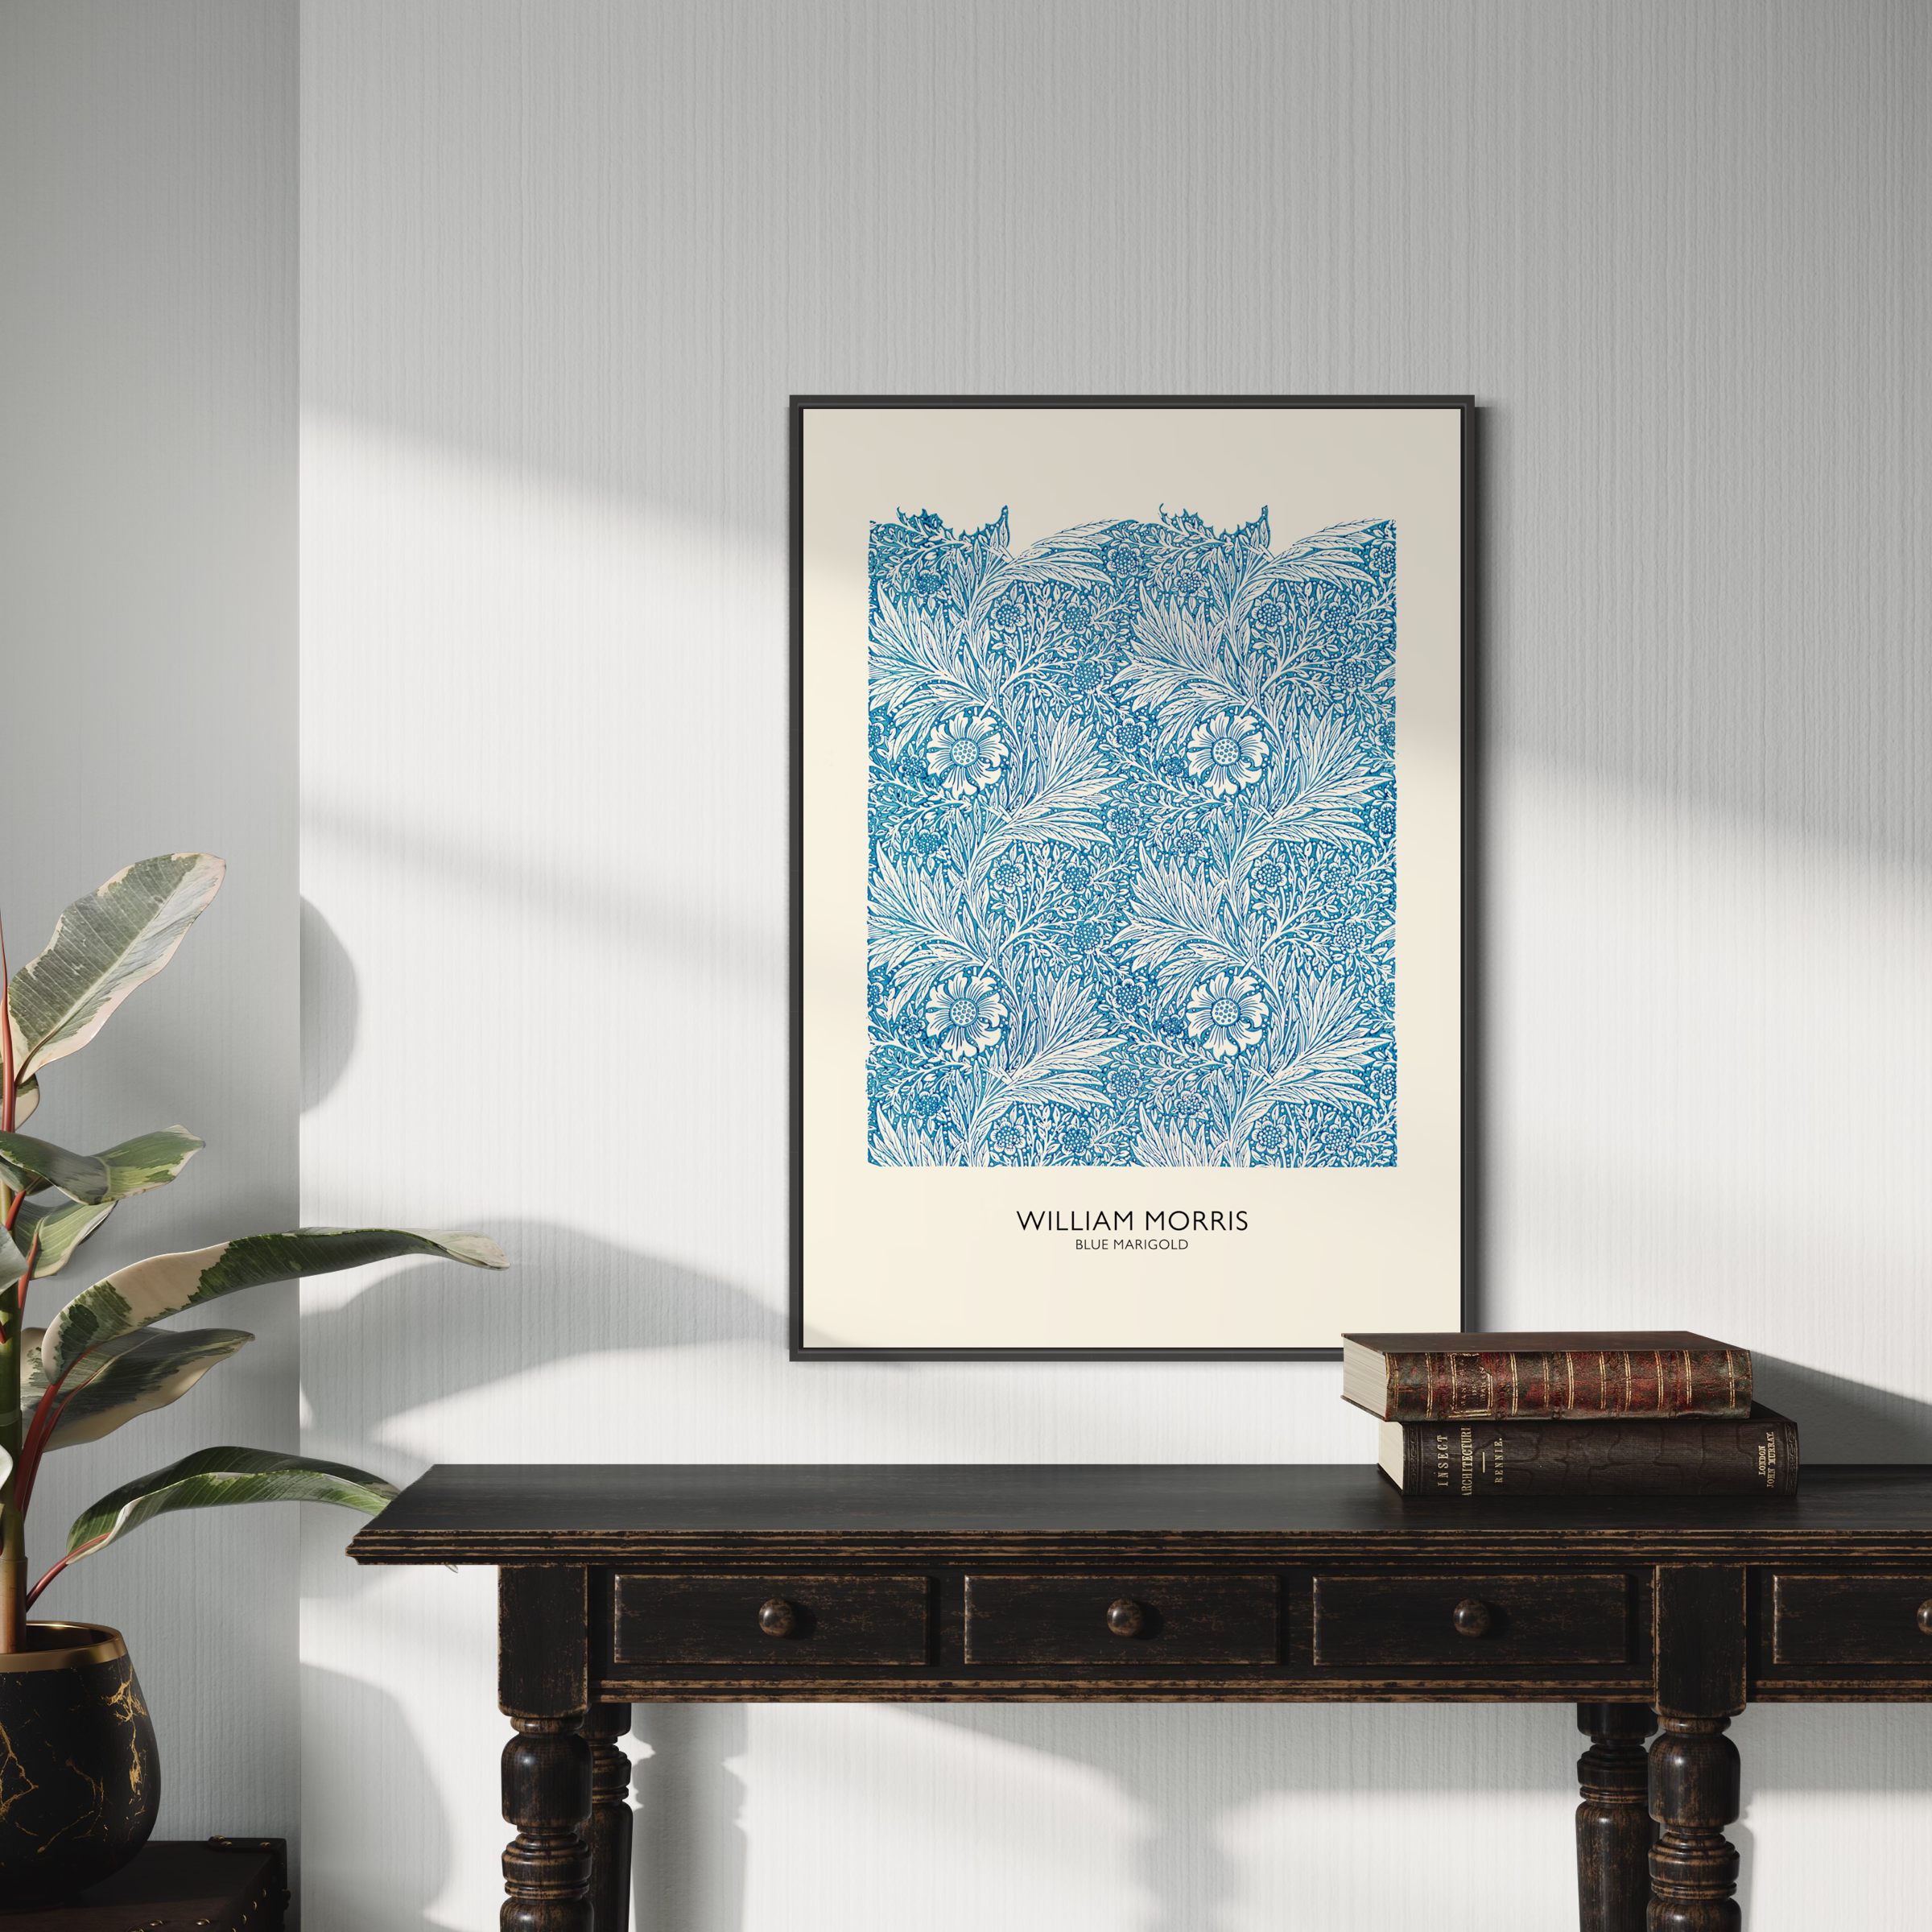 William Morris Poster - Blue Marigold